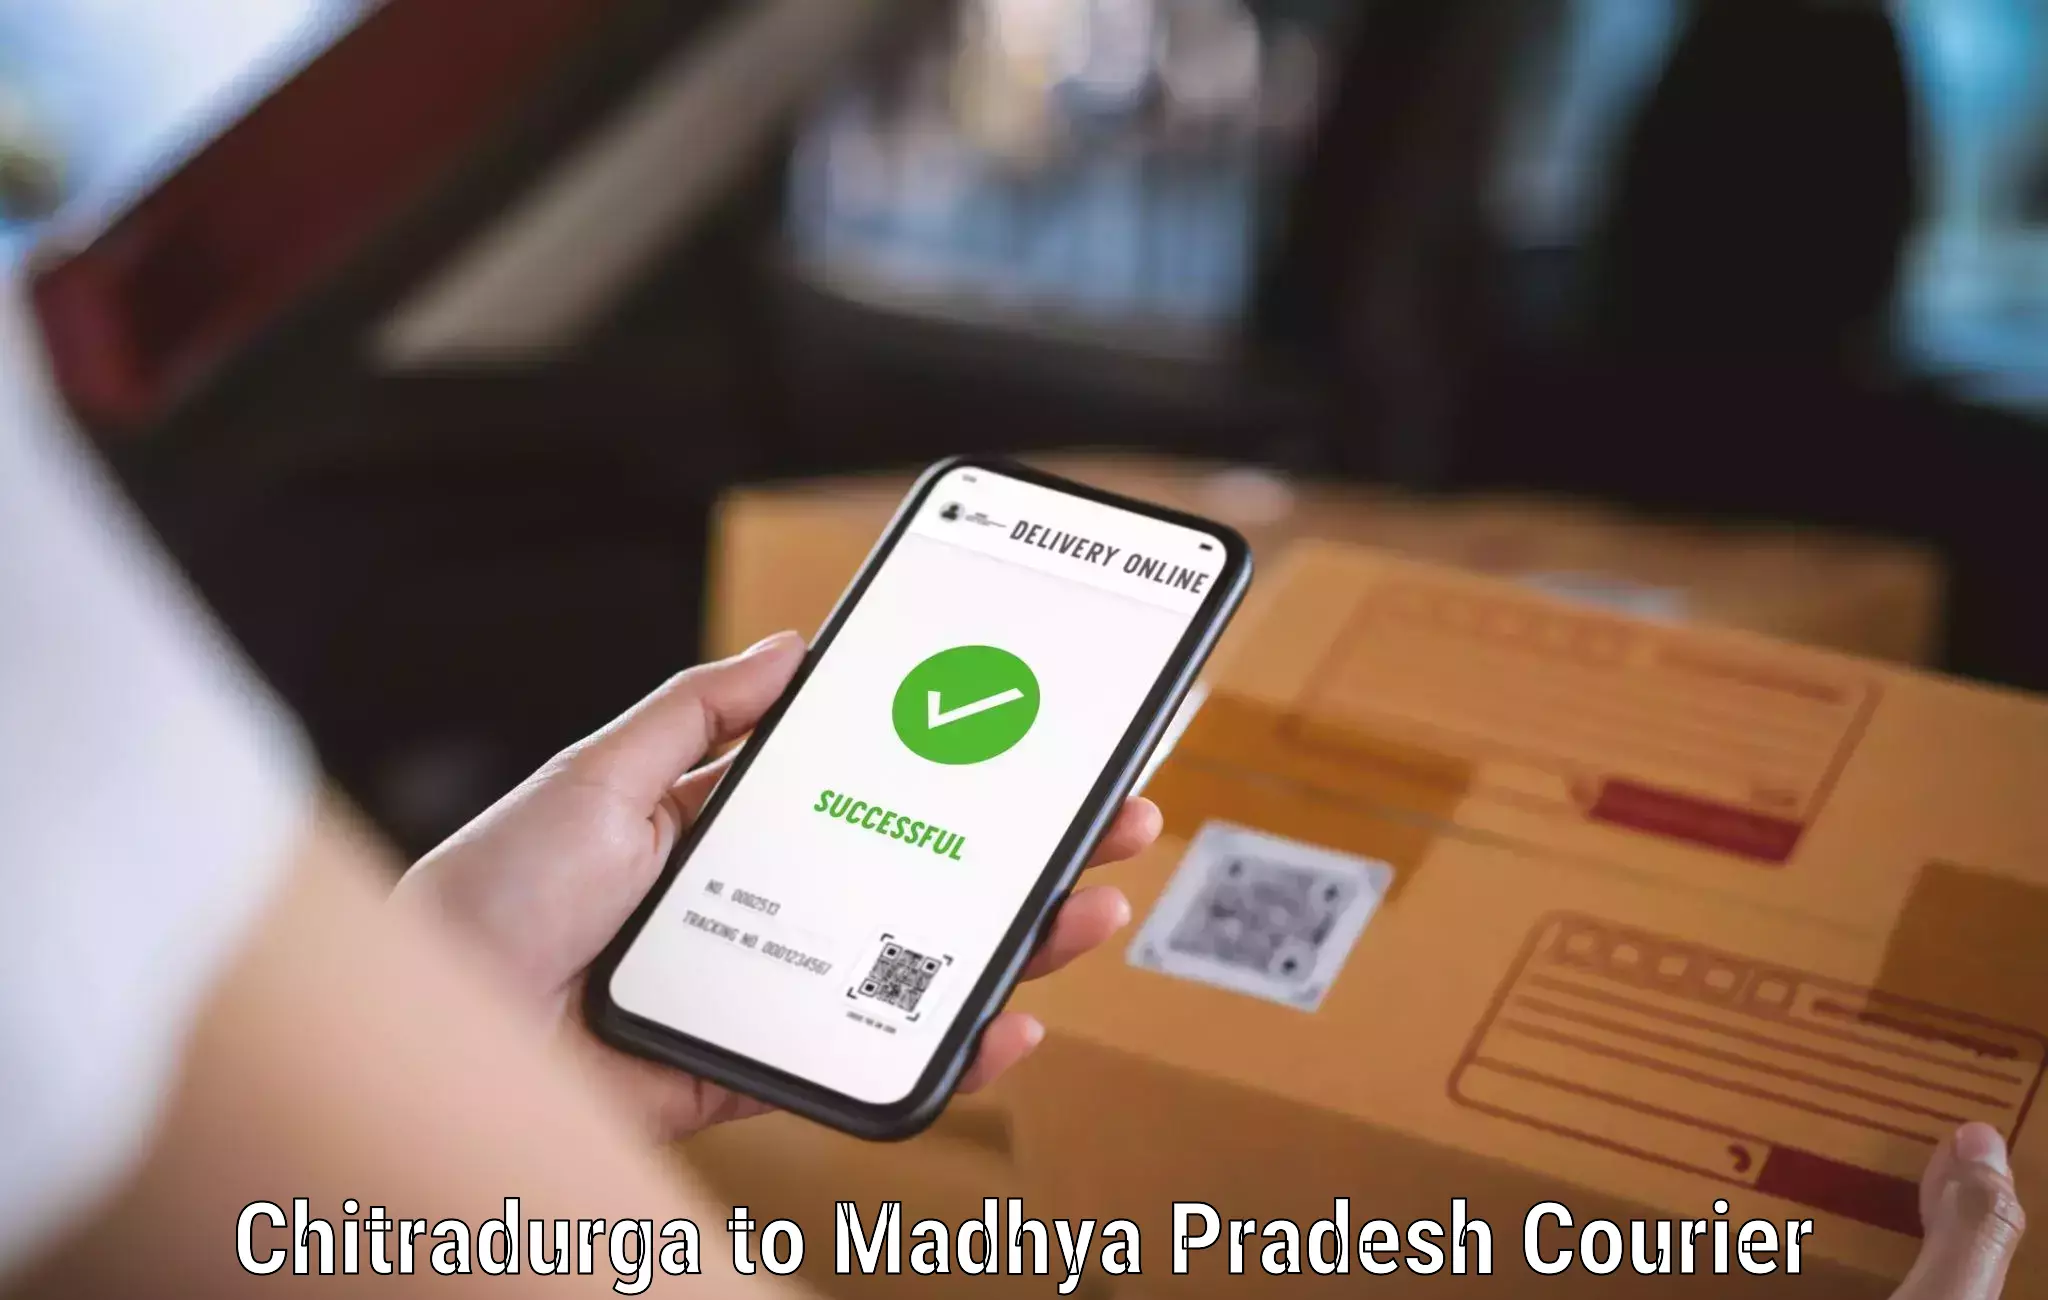 High value parcel delivery Chitradurga to Nalkheda